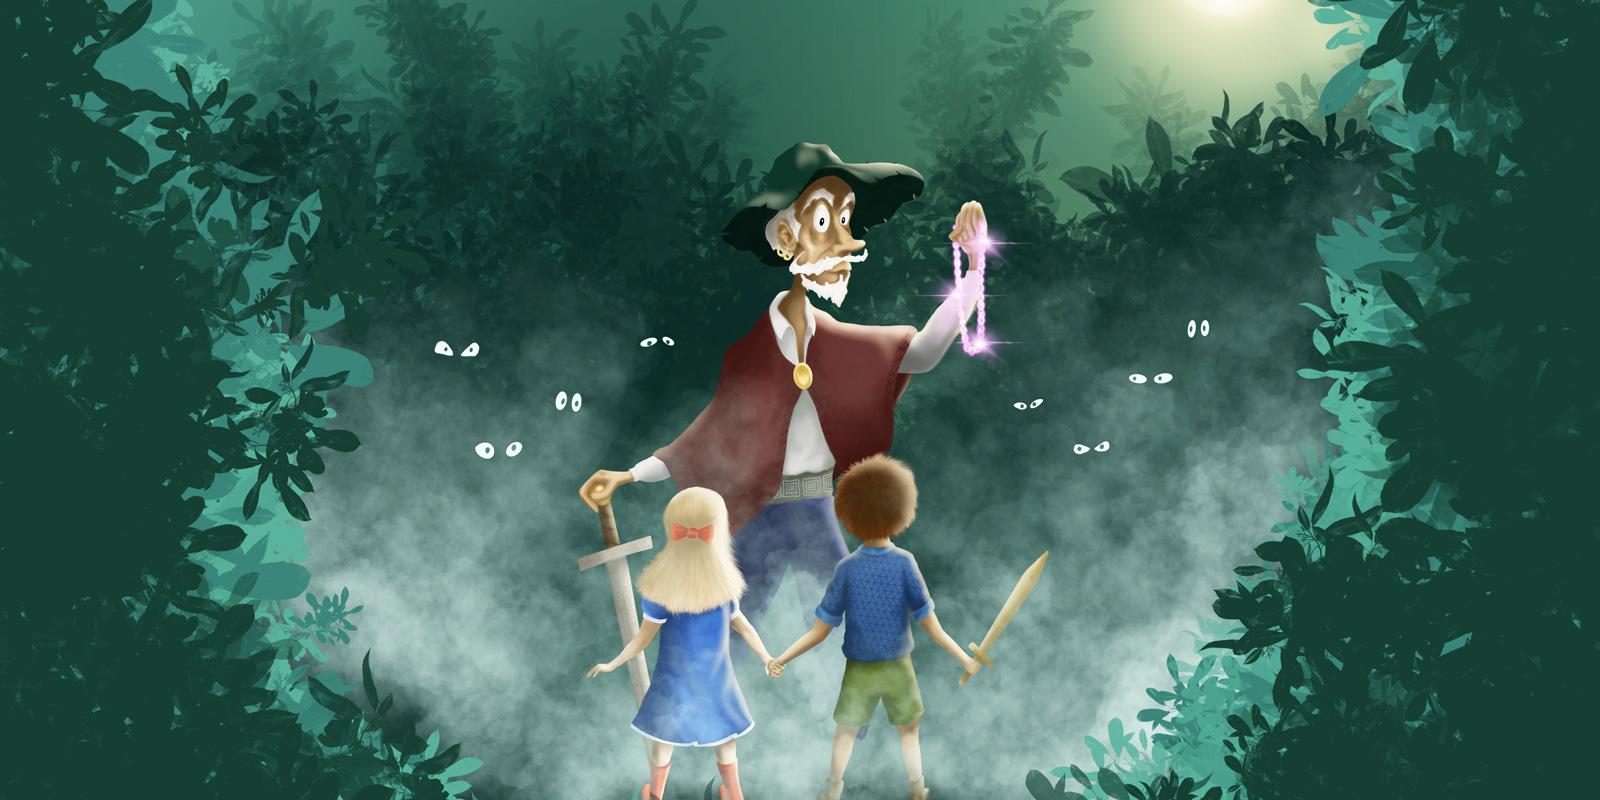 Illustration till föreställningen Ingen rövare finns i skogen. Föreställandes två barn som håller varandra i hand och ser på vad som kan tolkas som en rövare som håller i ett svärd och ett halsband. Bakgrunden är dunkel skog med ögon som skymtar.